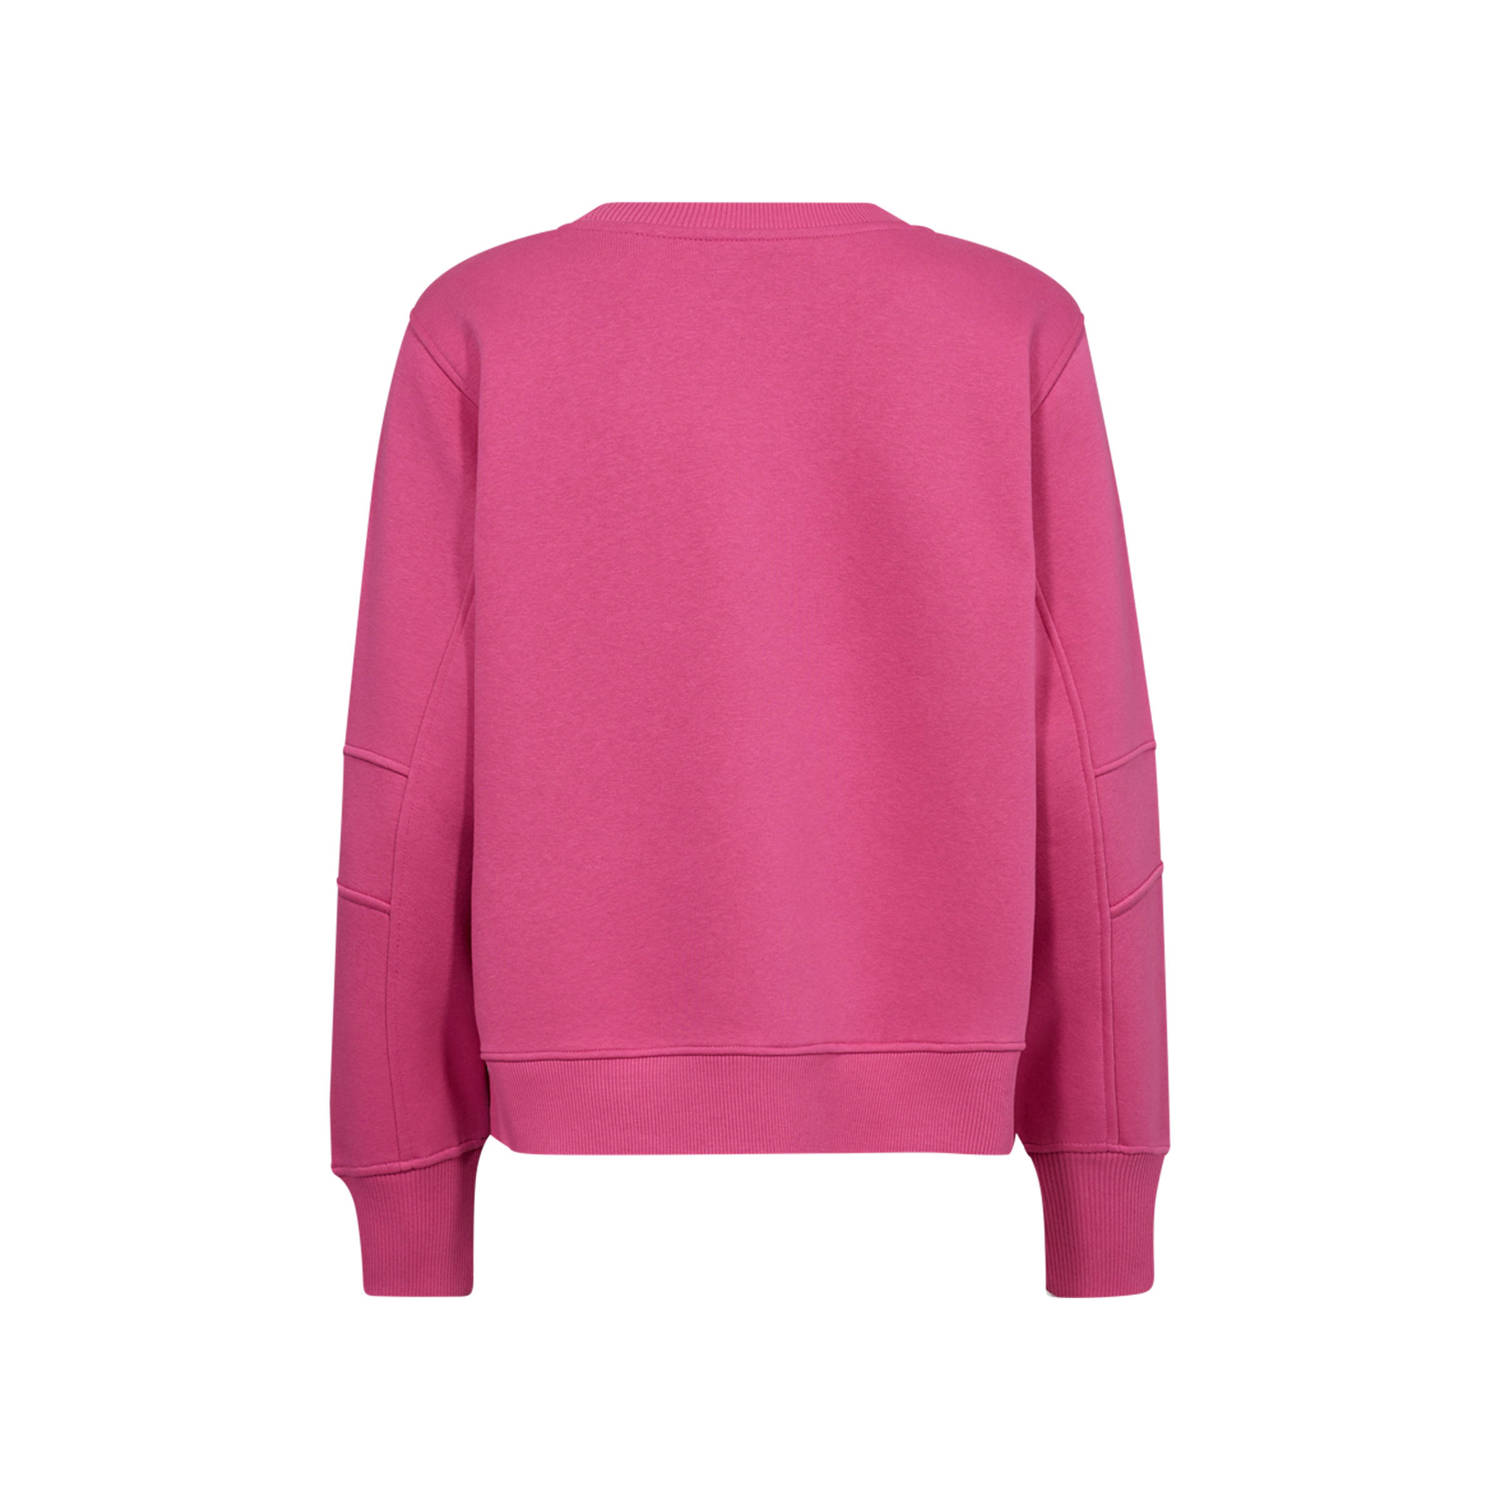 FREEQUENT sweater met tekst roze